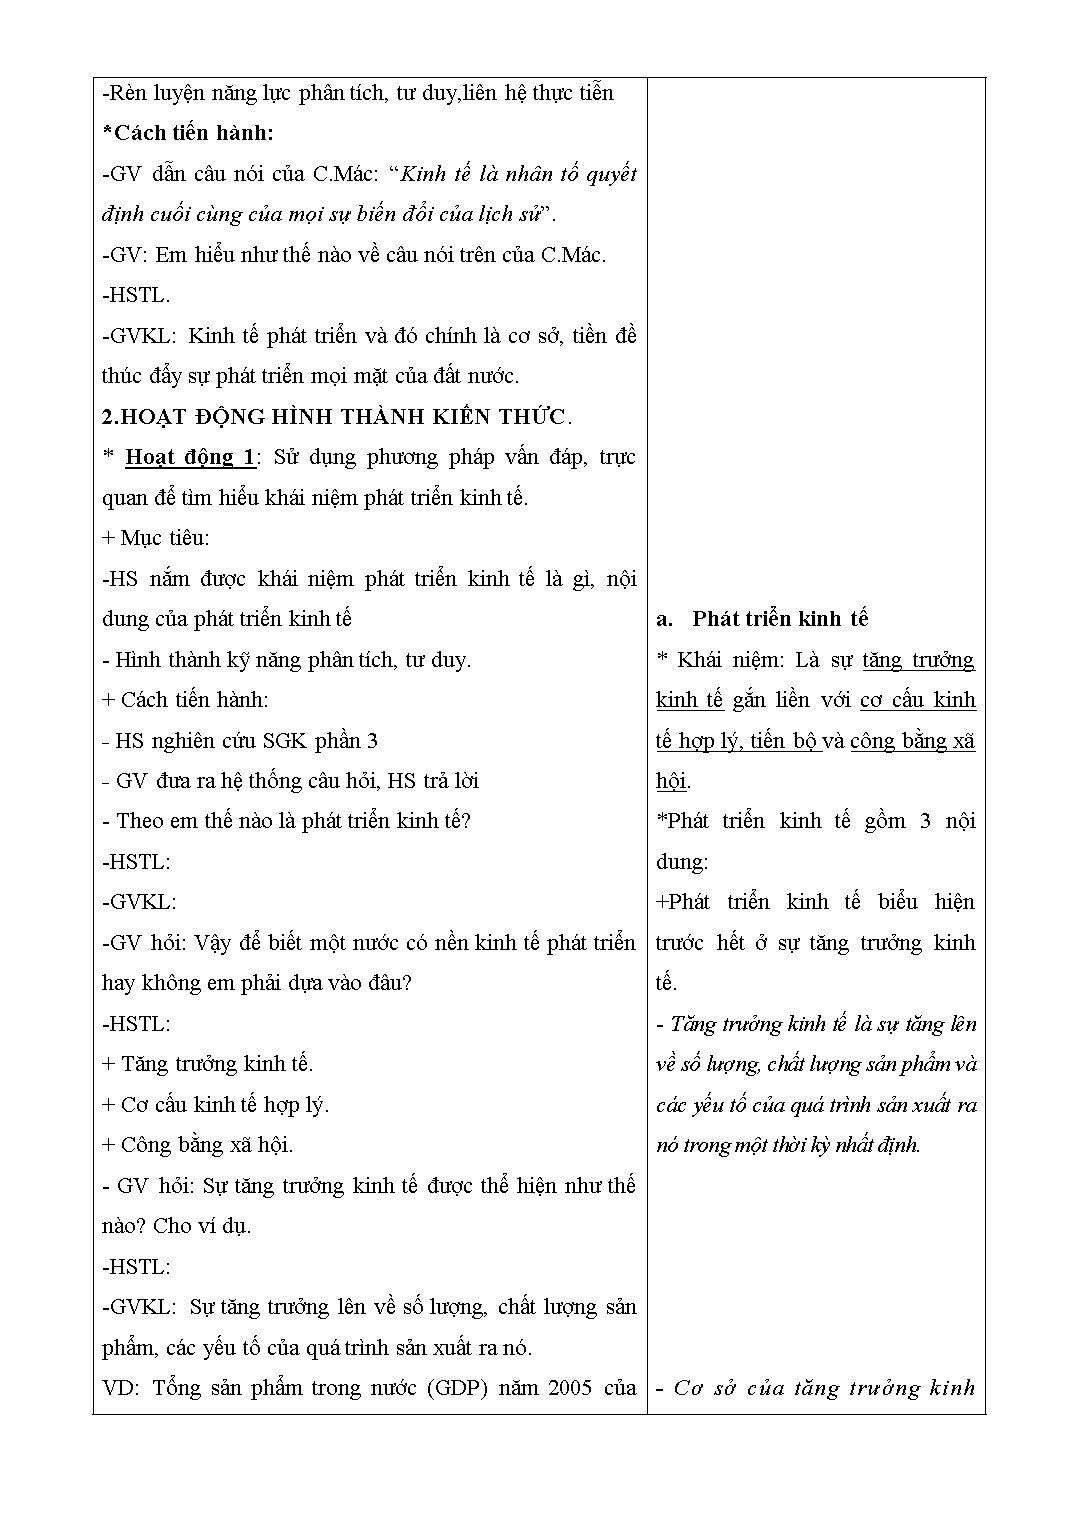 Giáo án Giáo dục công dân 11 - Lê Quang Minh trang 9